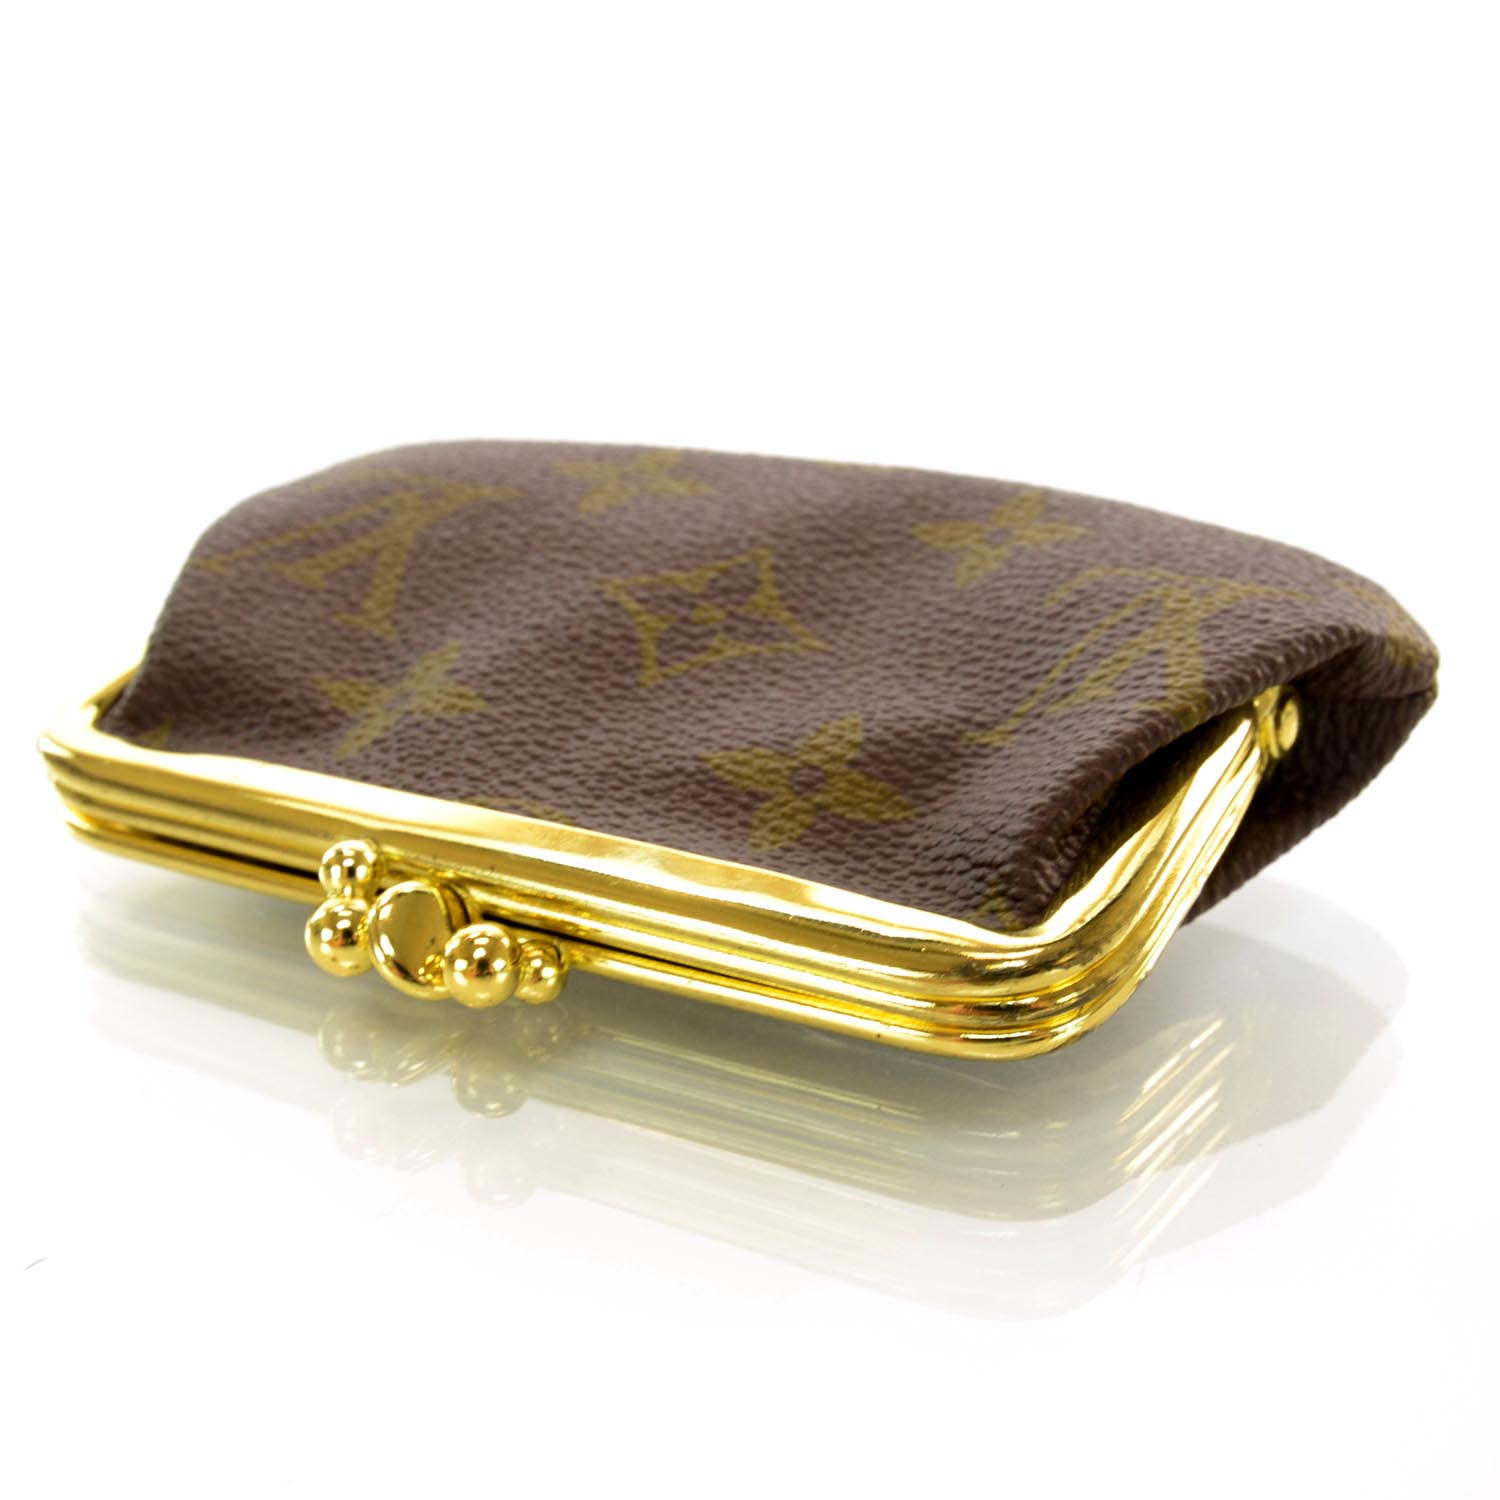 Louis Vuitton wallet Louis Vuitton wallet - AliExpress